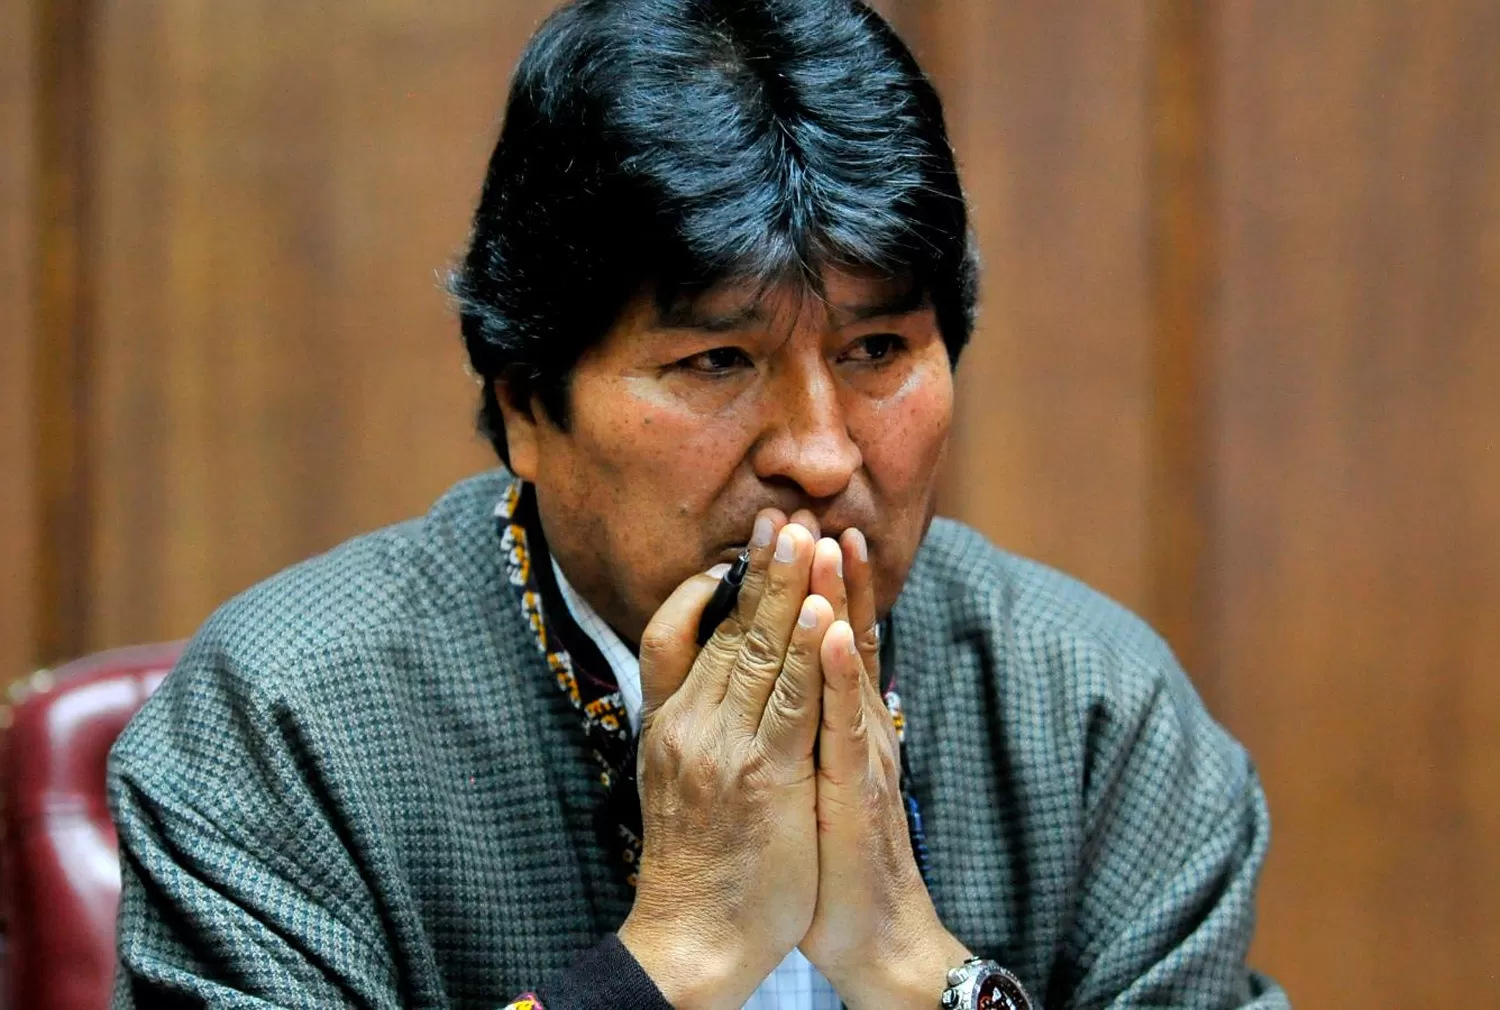 La fiscalía de Bolivia emitió una orden de arresto contra Evo Morales por sedición y terrorismo